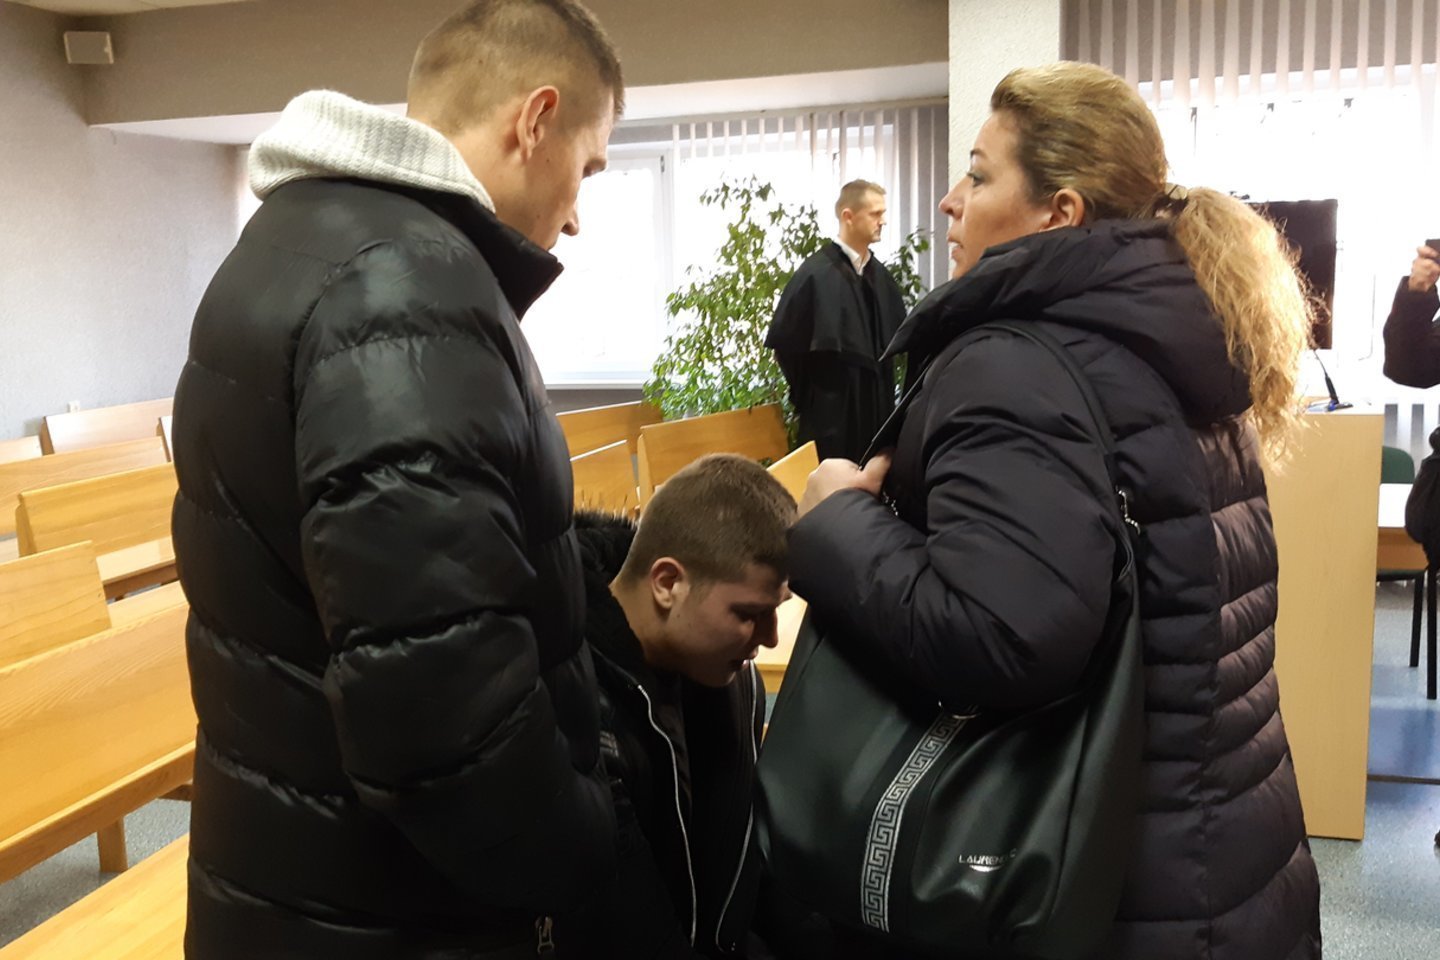  16-metę išprievartavusiam ir itin žiauriai sumušusiam jurbarkiečiui M. Icikevičiui penktadienį paskelbtas nuosprendis. <br> A.Pilaitienės nuotr. 